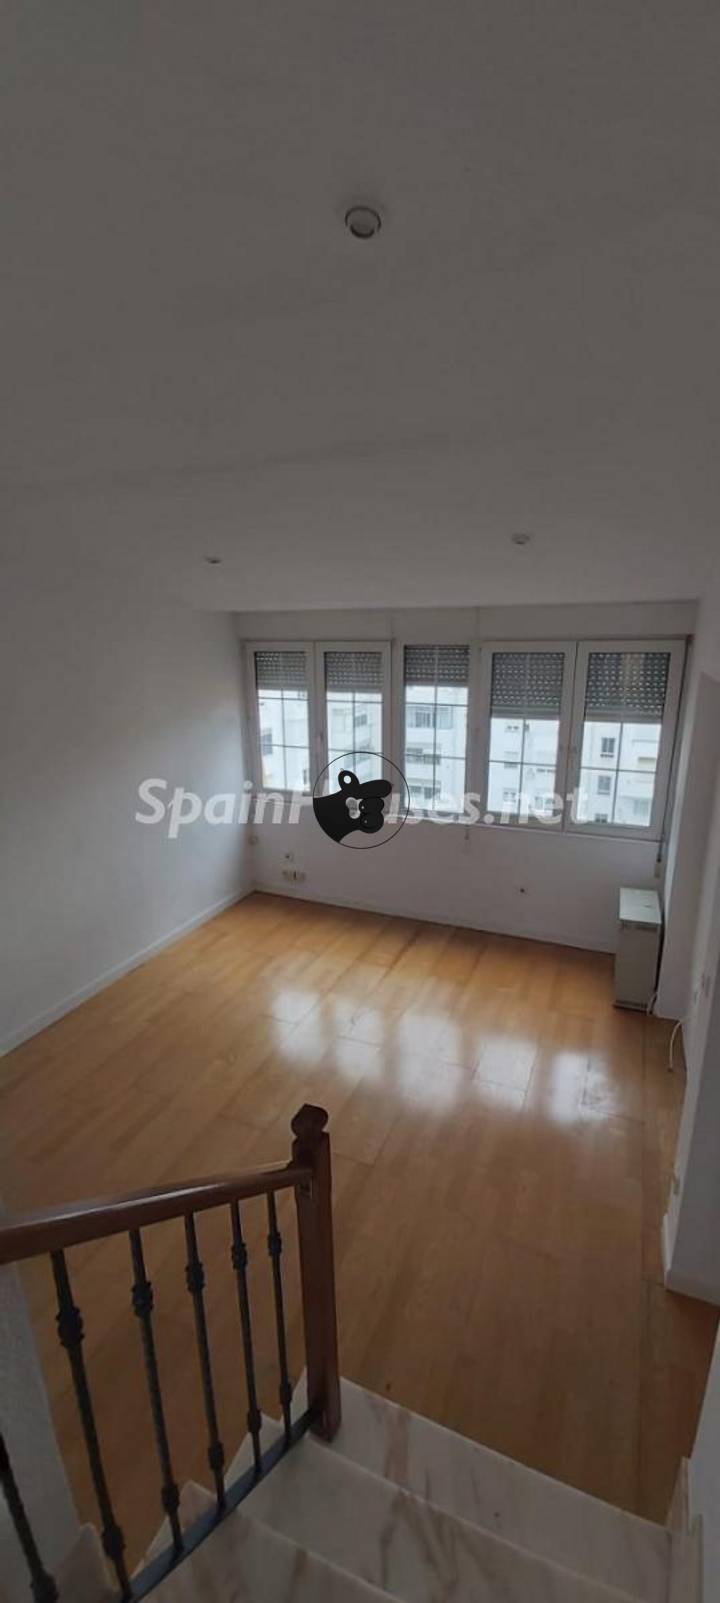 2 bedrooms apartment in Torrelavega, Cantabria, Spain